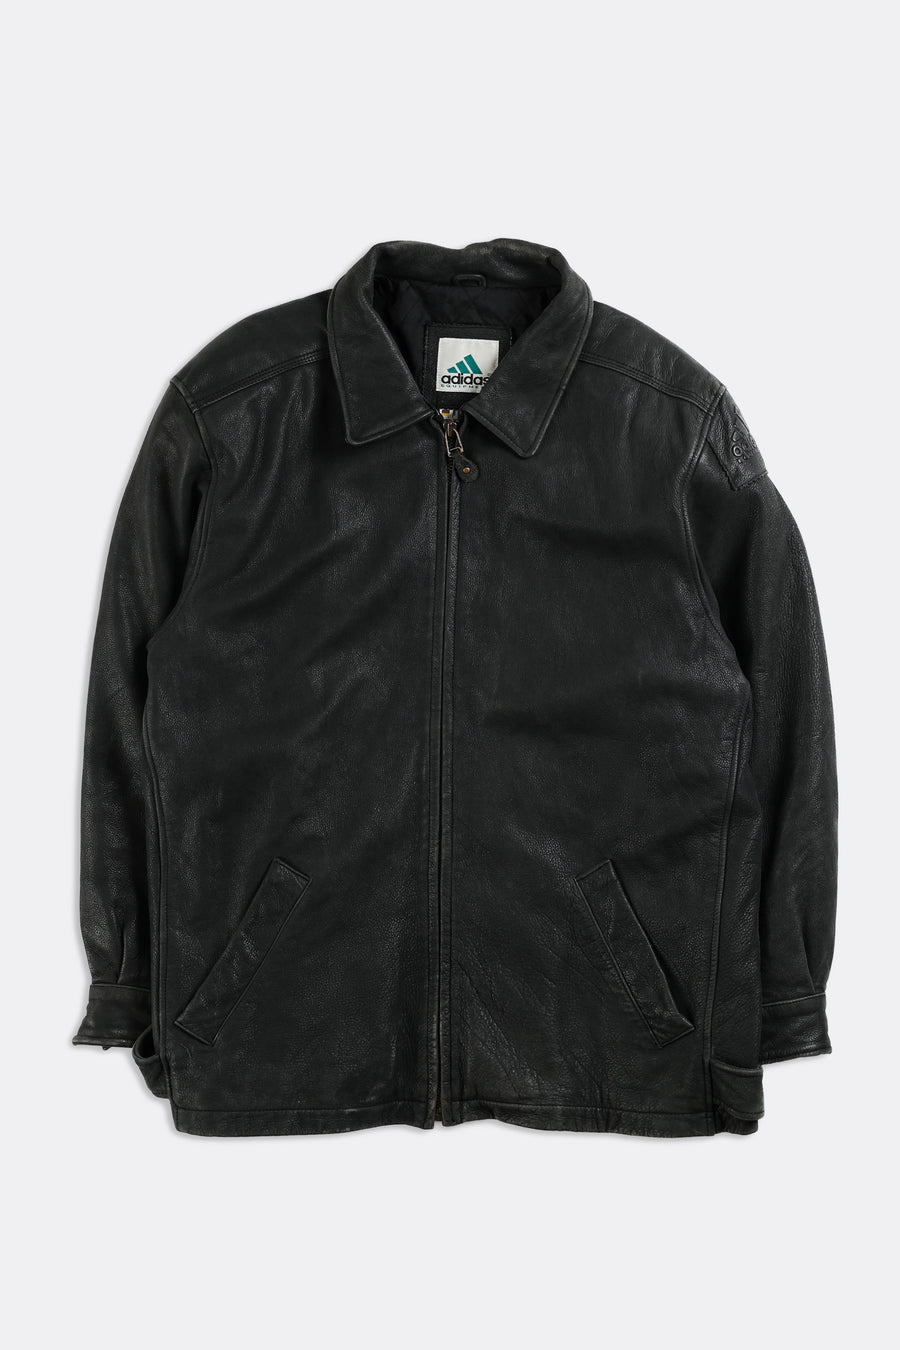 Vintage Adidas Leather Jacket